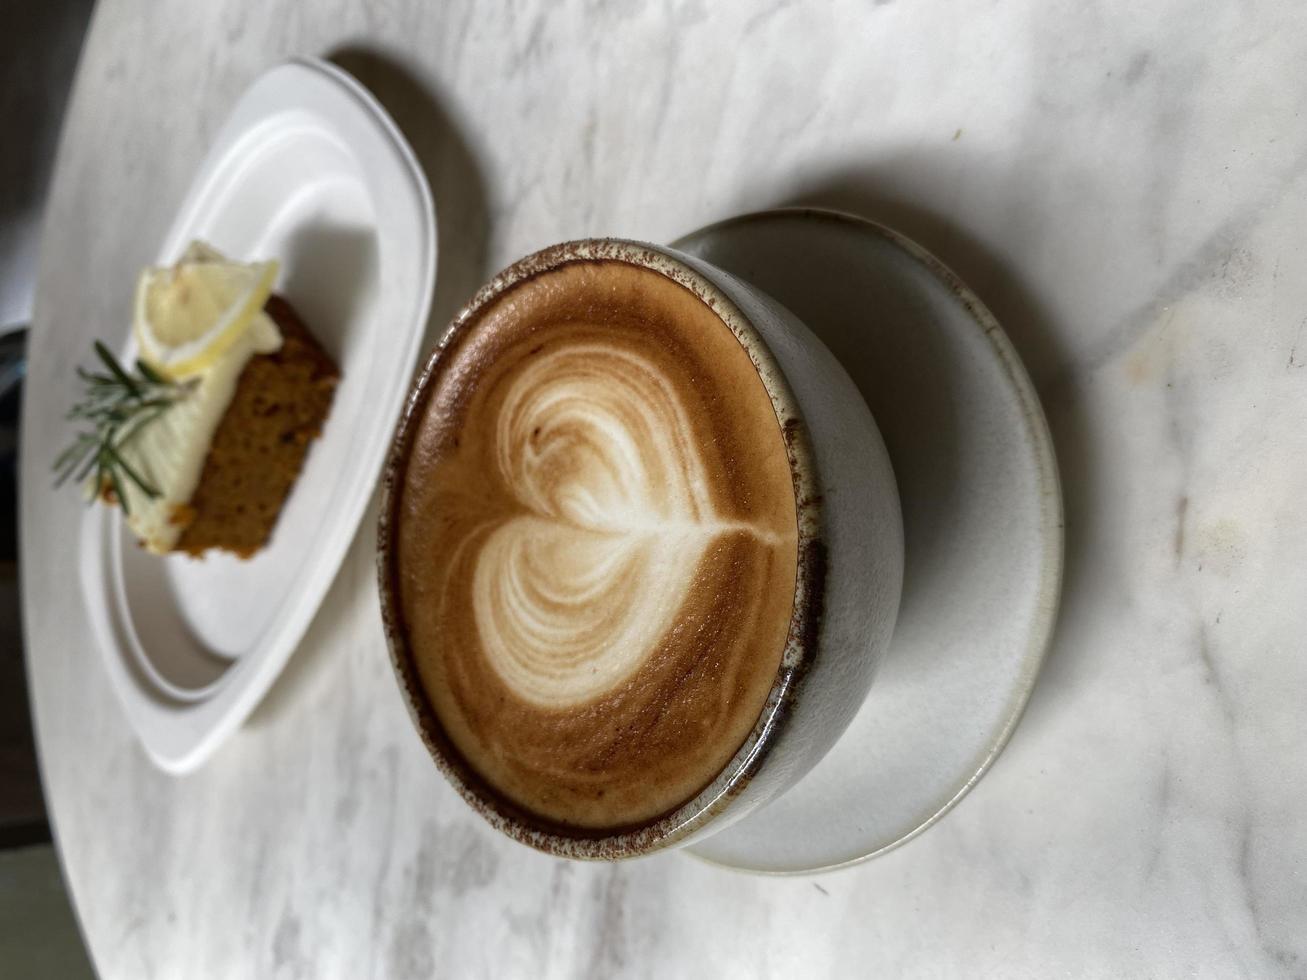 hjärta latte art på kaffekopp och tårta på träbord foto